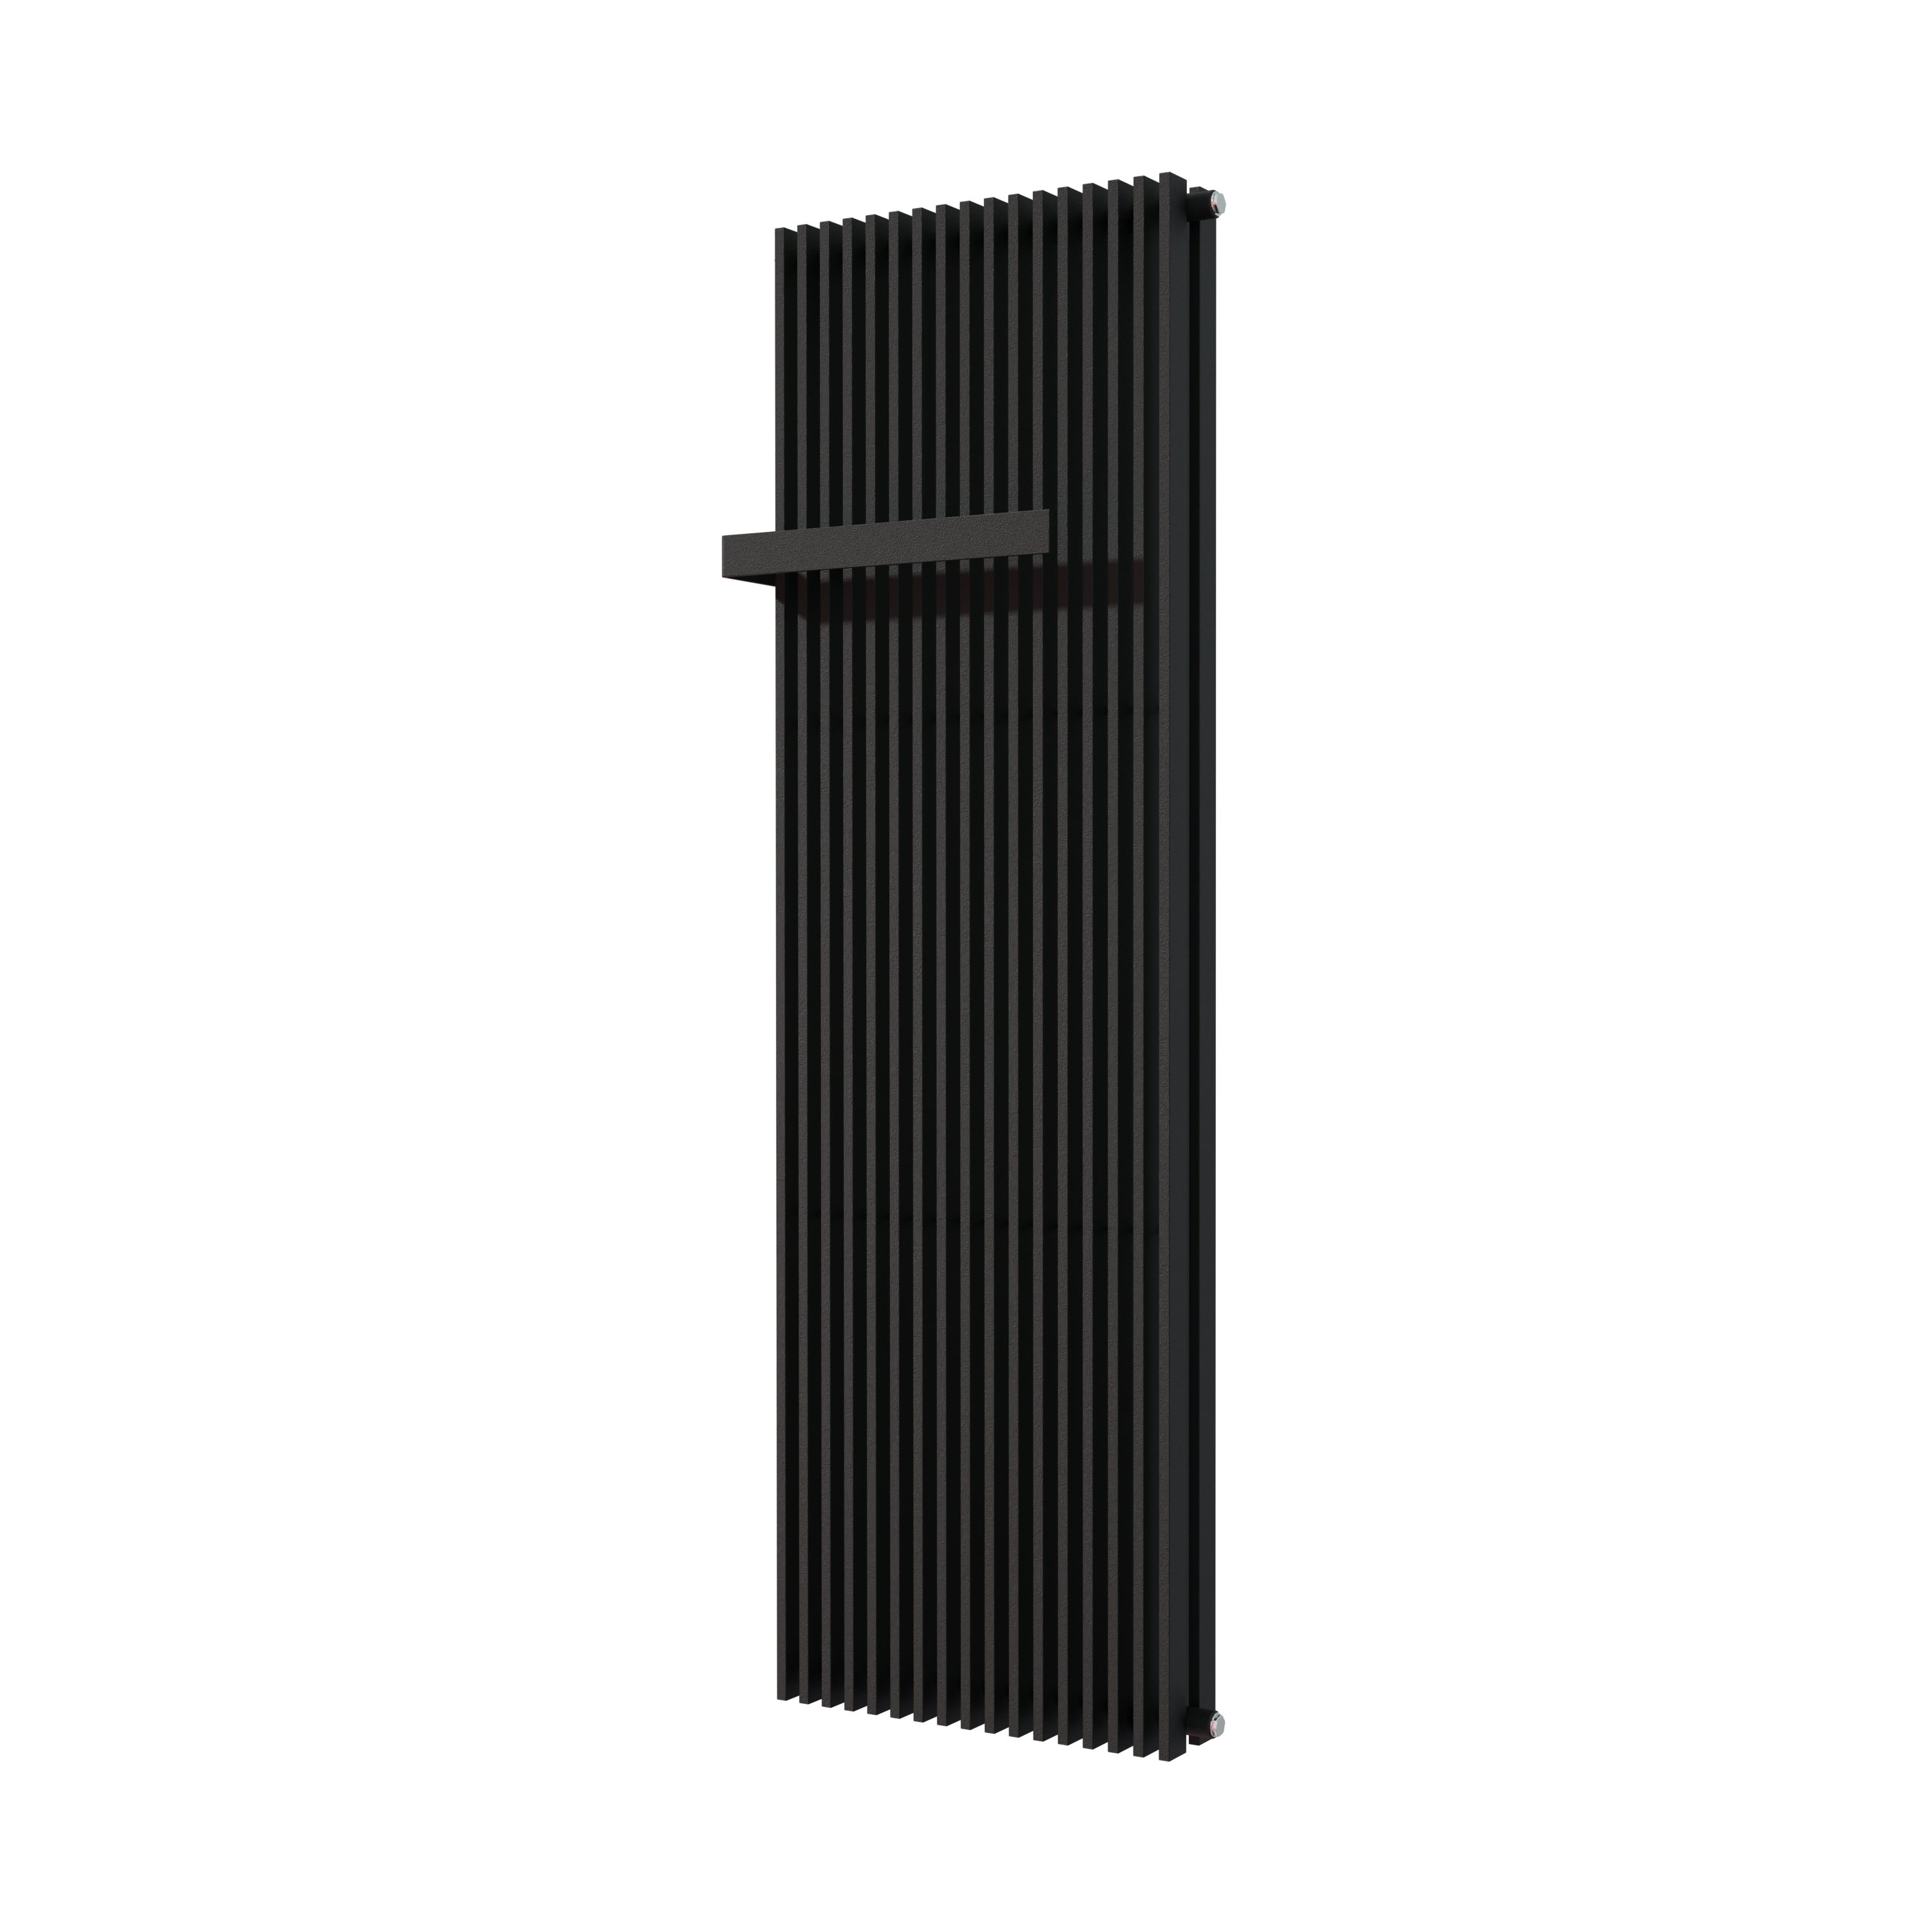 Vipera Corrason dubbele badkamerradiator 60 x 180 cm centrale verwarming mat zwart zij- en middenaansluiting 3,468W